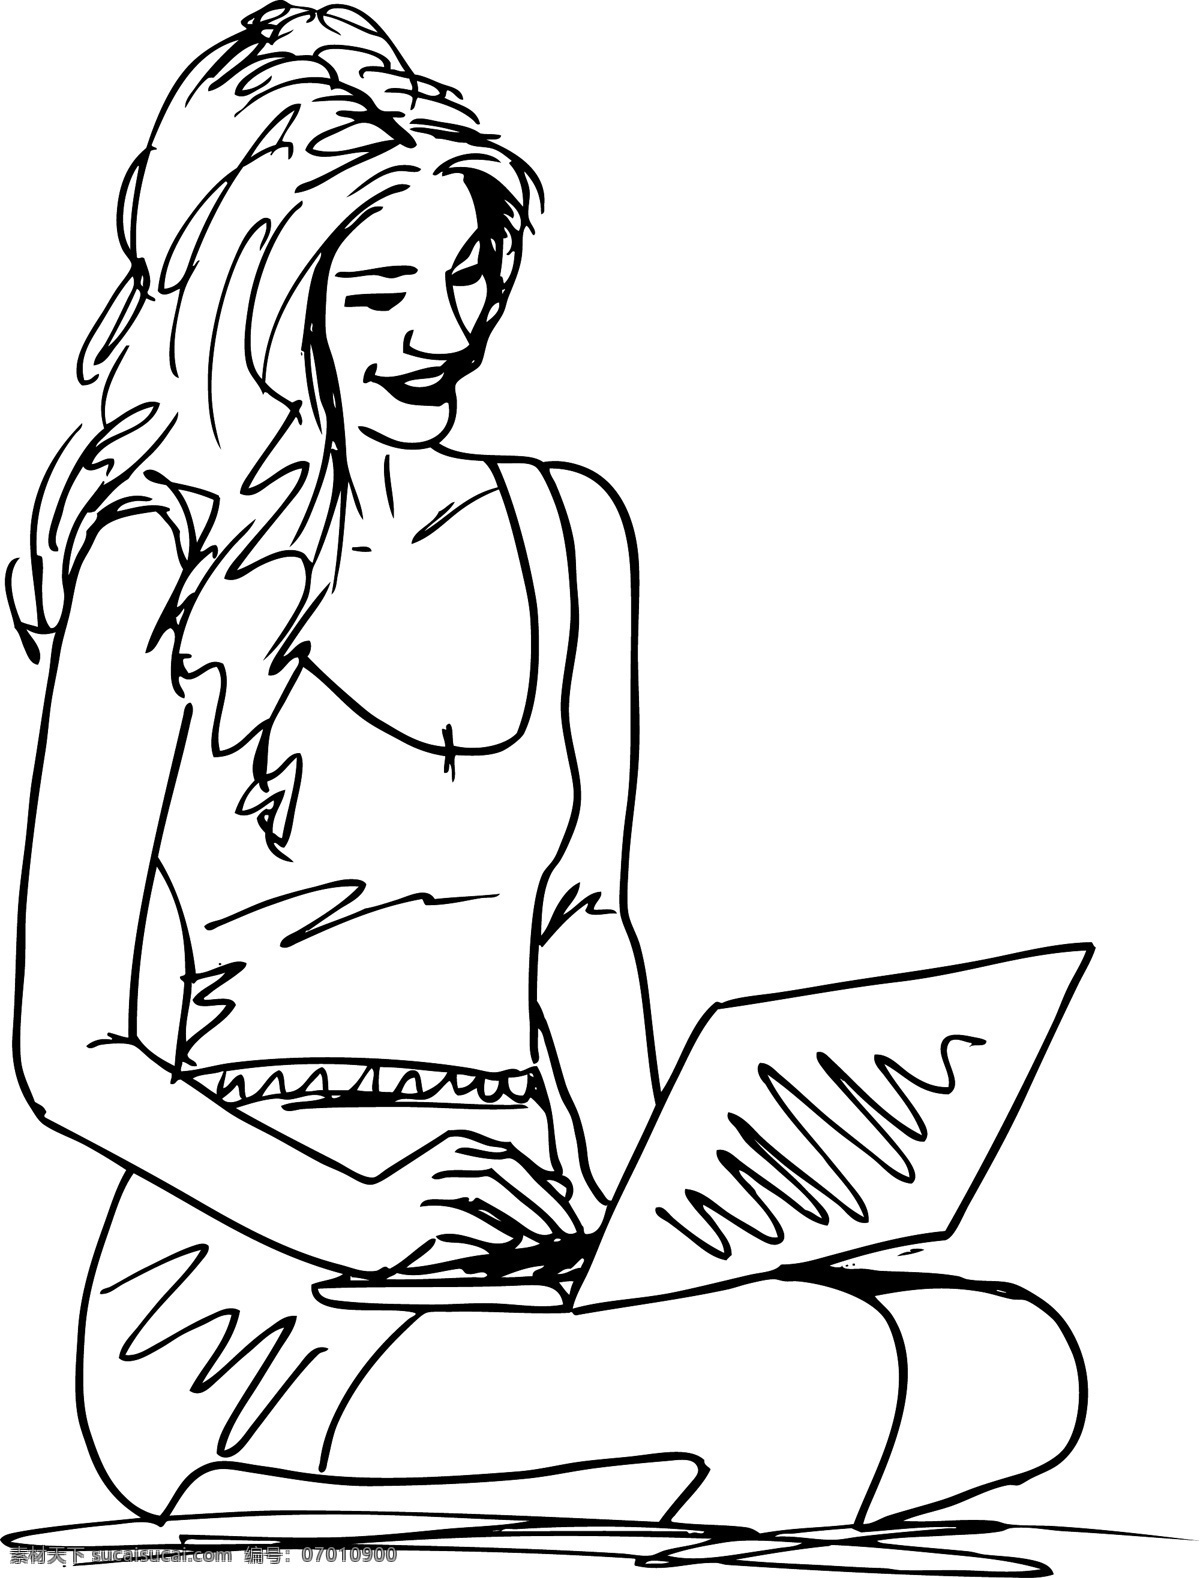 笔记本 电脑 插画 矢量 年轻 女子 素描 矢量图 矢量人物